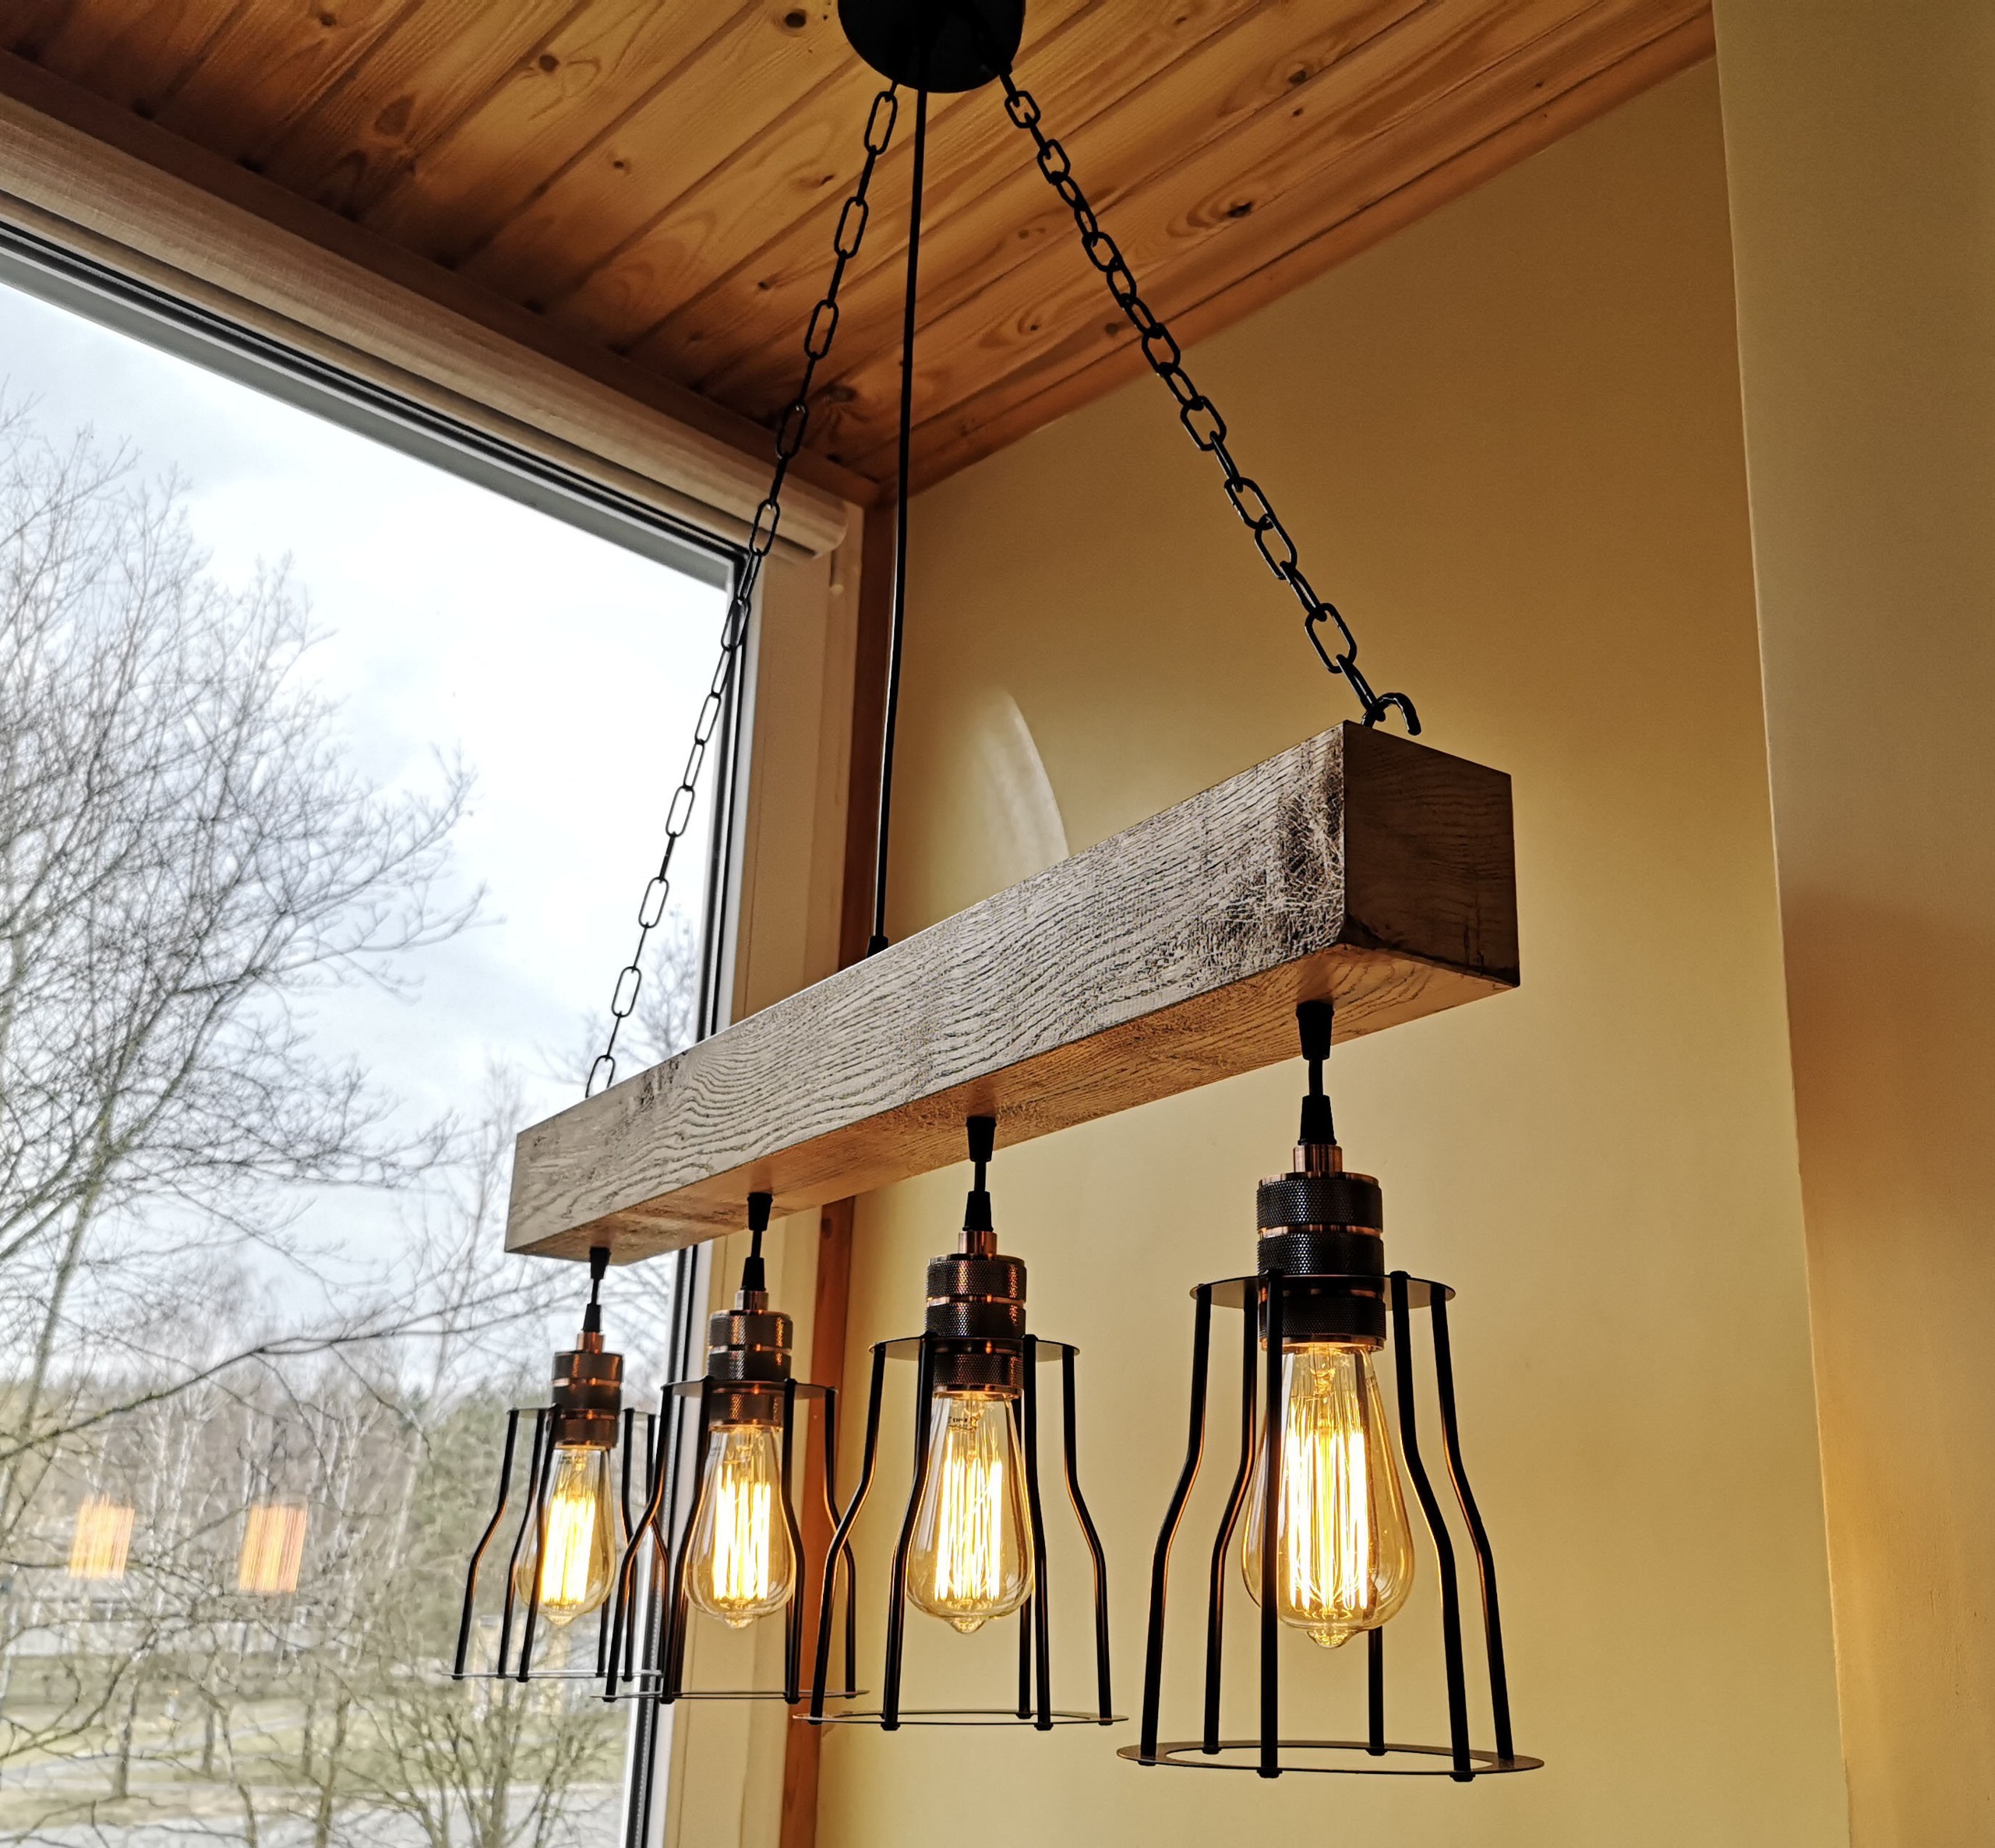 Rustic lighting wood chandelier